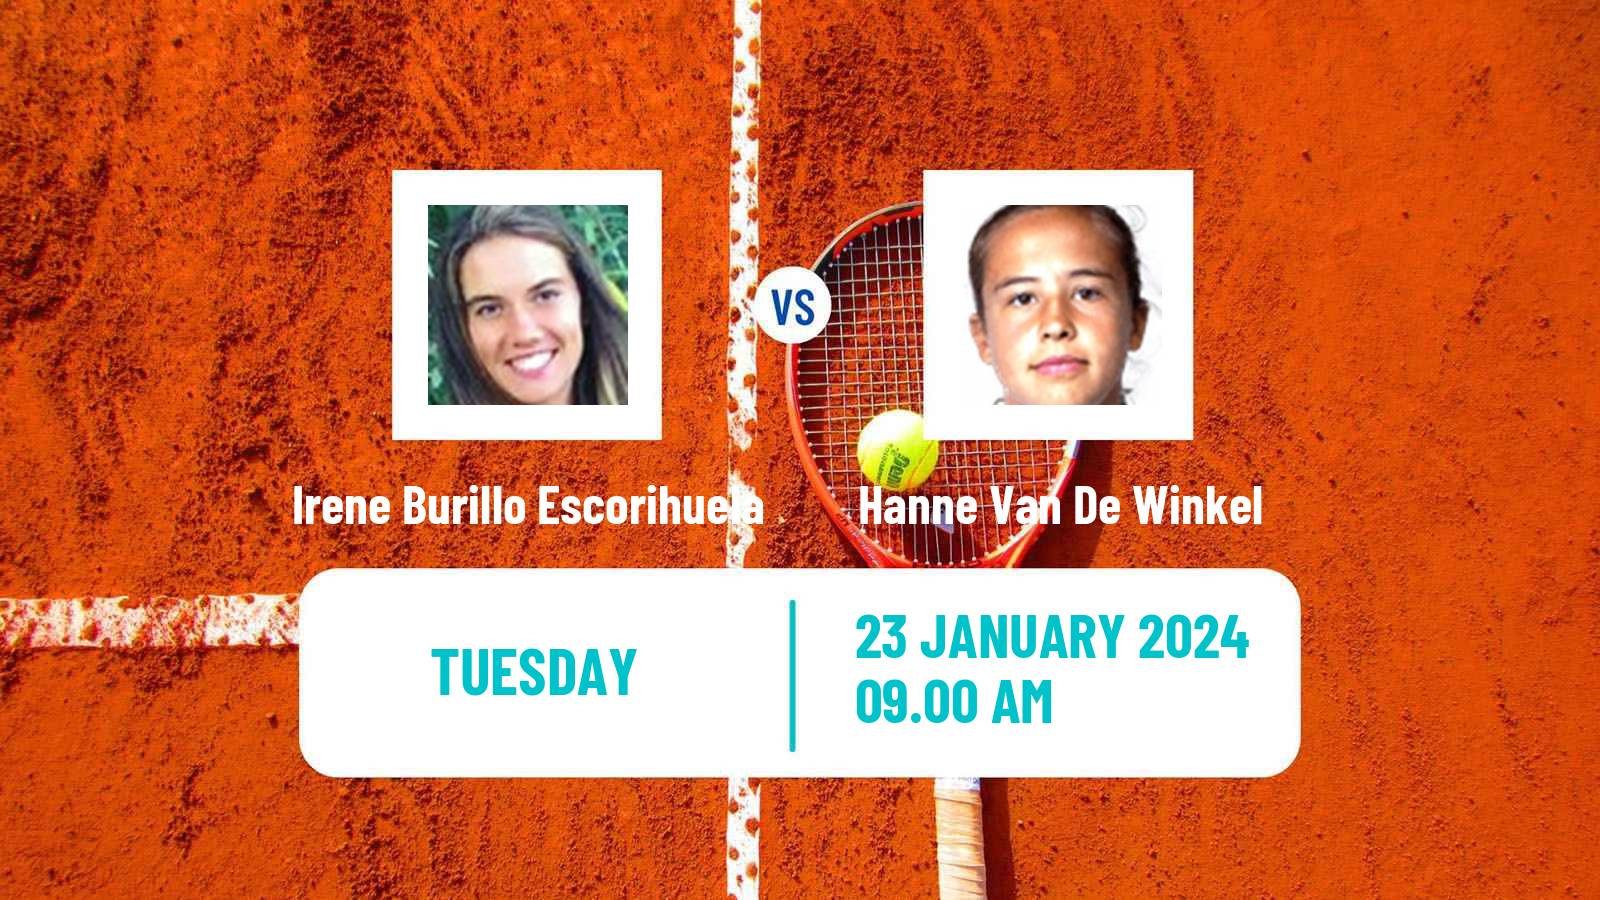 Tennis ITF W35 Monastir 2 Women 2024 Irene Burillo Escorihuela - Hanne Van De Winkel